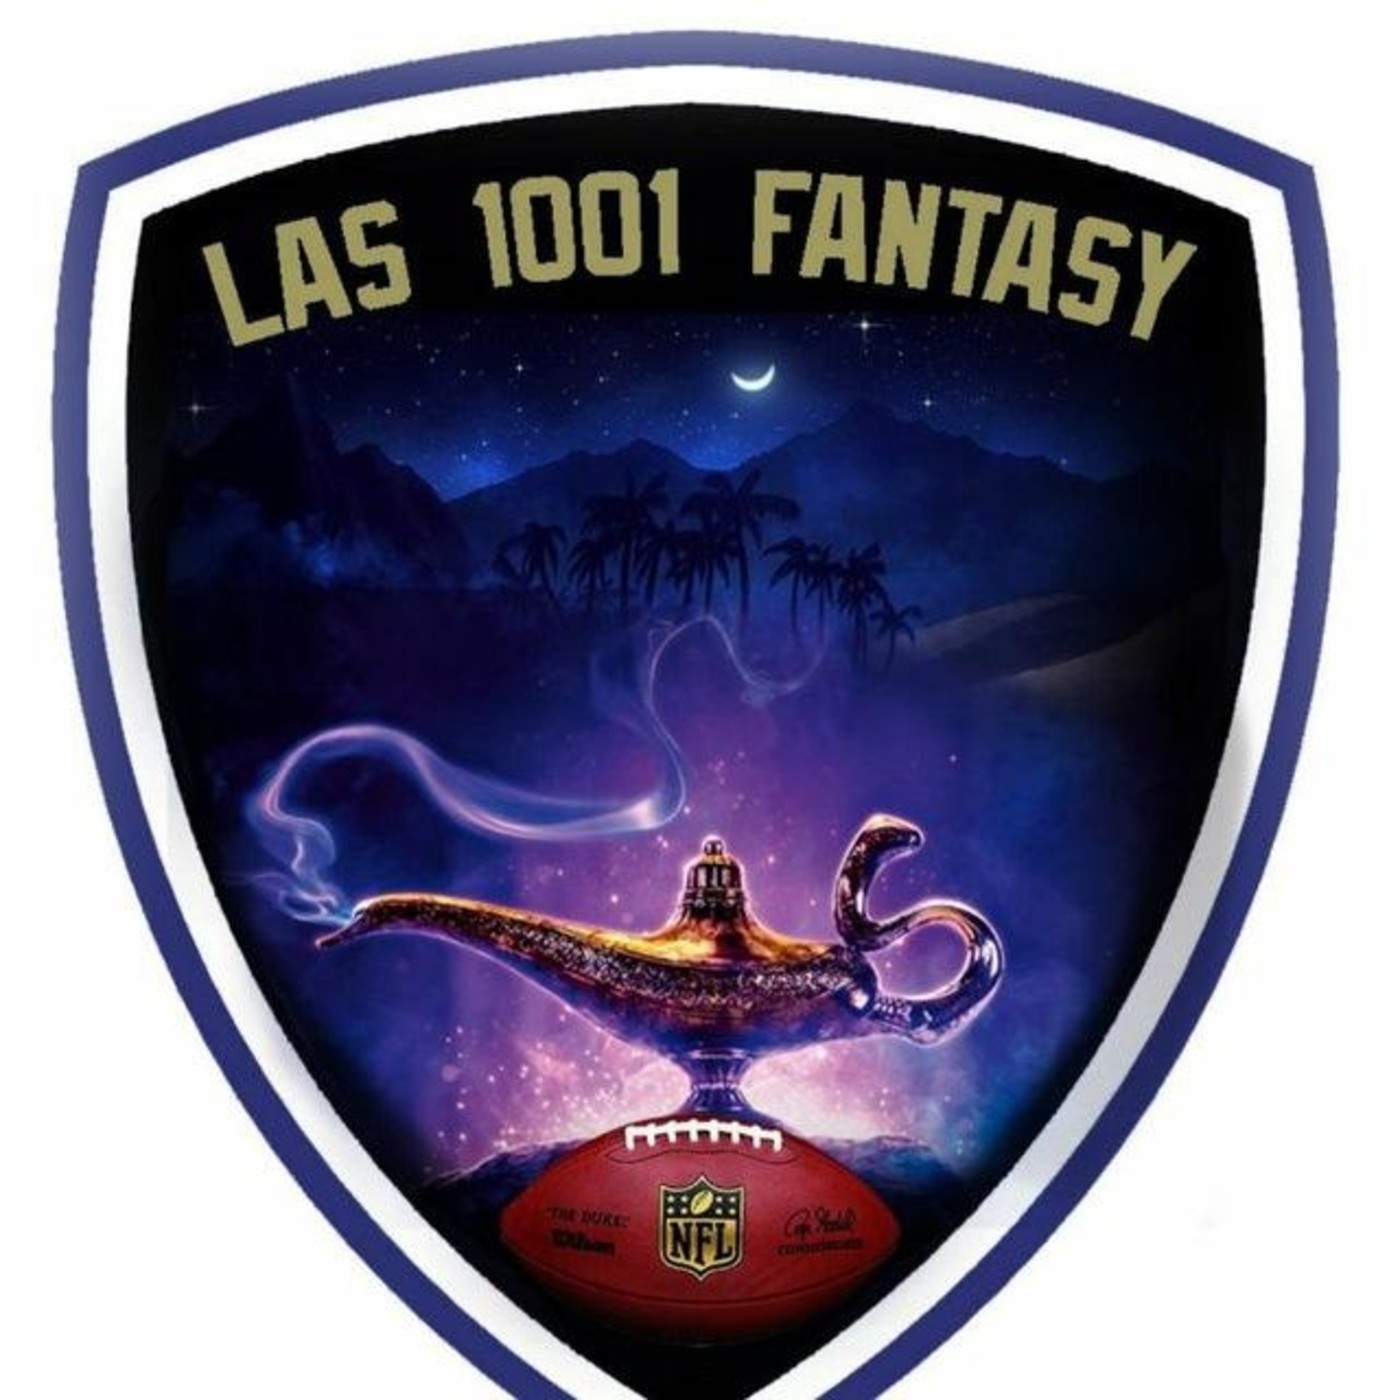 Las 1001 Fantasy - Fantasy 0119 - Analizando la temporada fantasy I